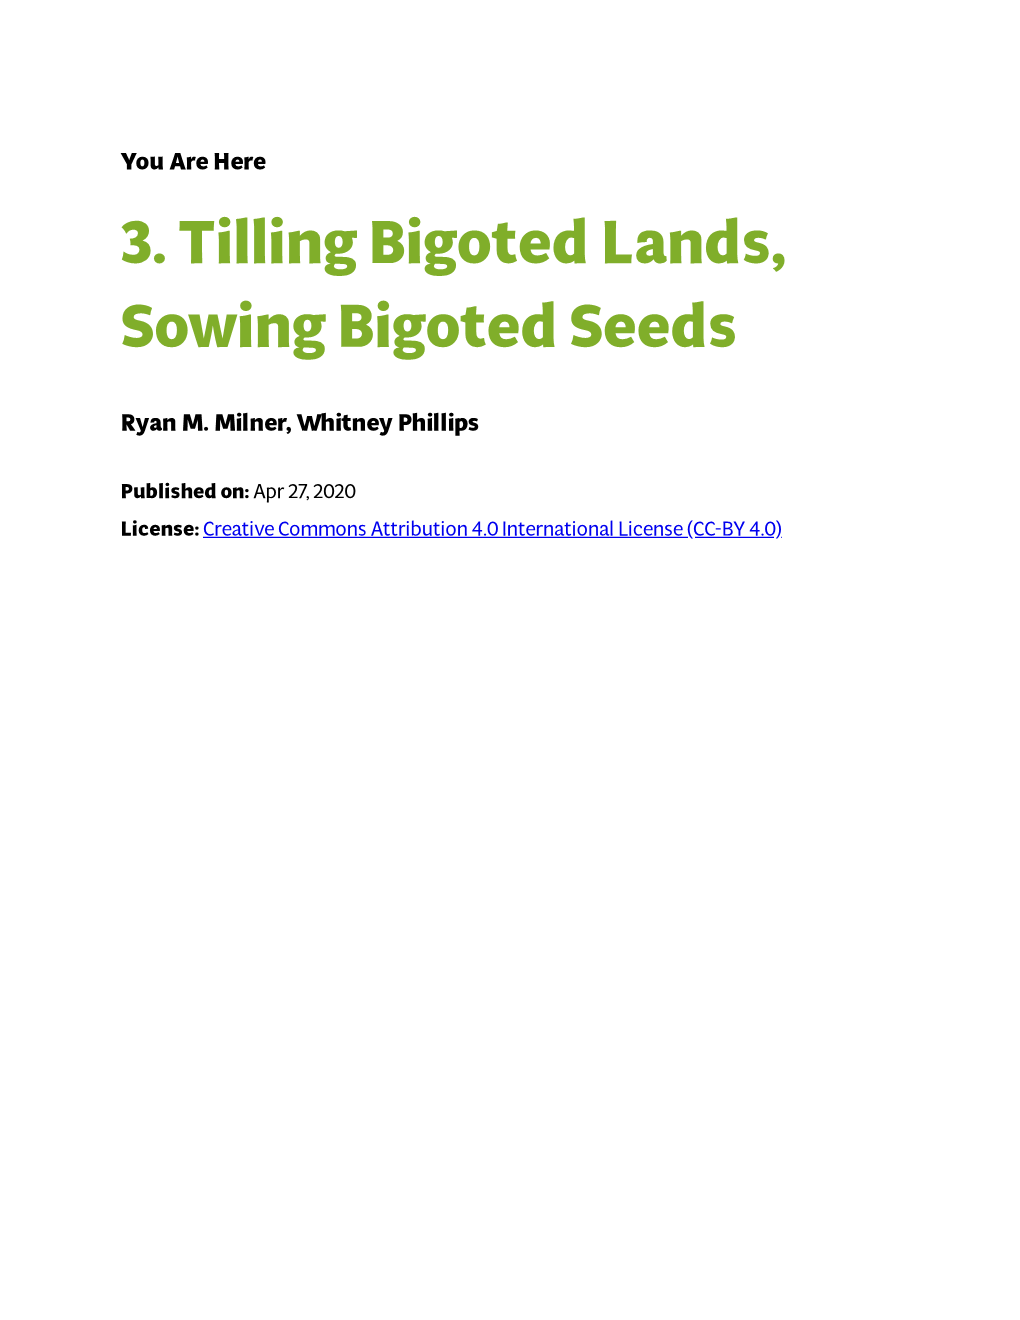 3. Tilling Bigoted Lands, Sowing Bigoted Seeds